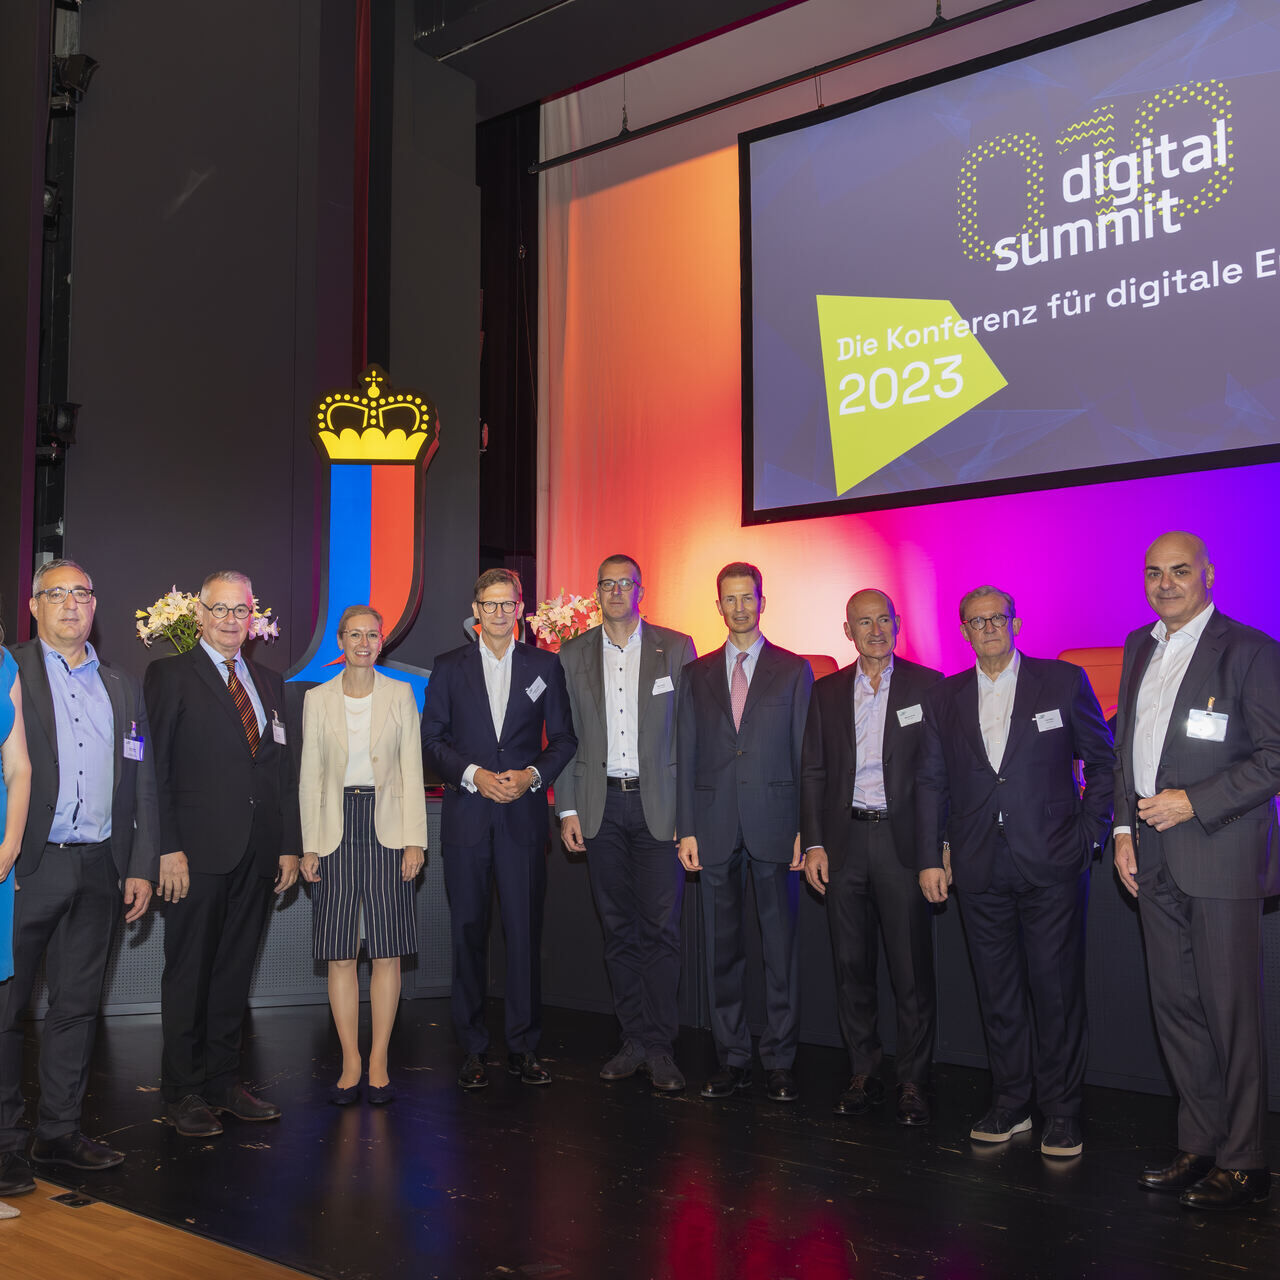 Digital Summit 2023: organizatori i govornici